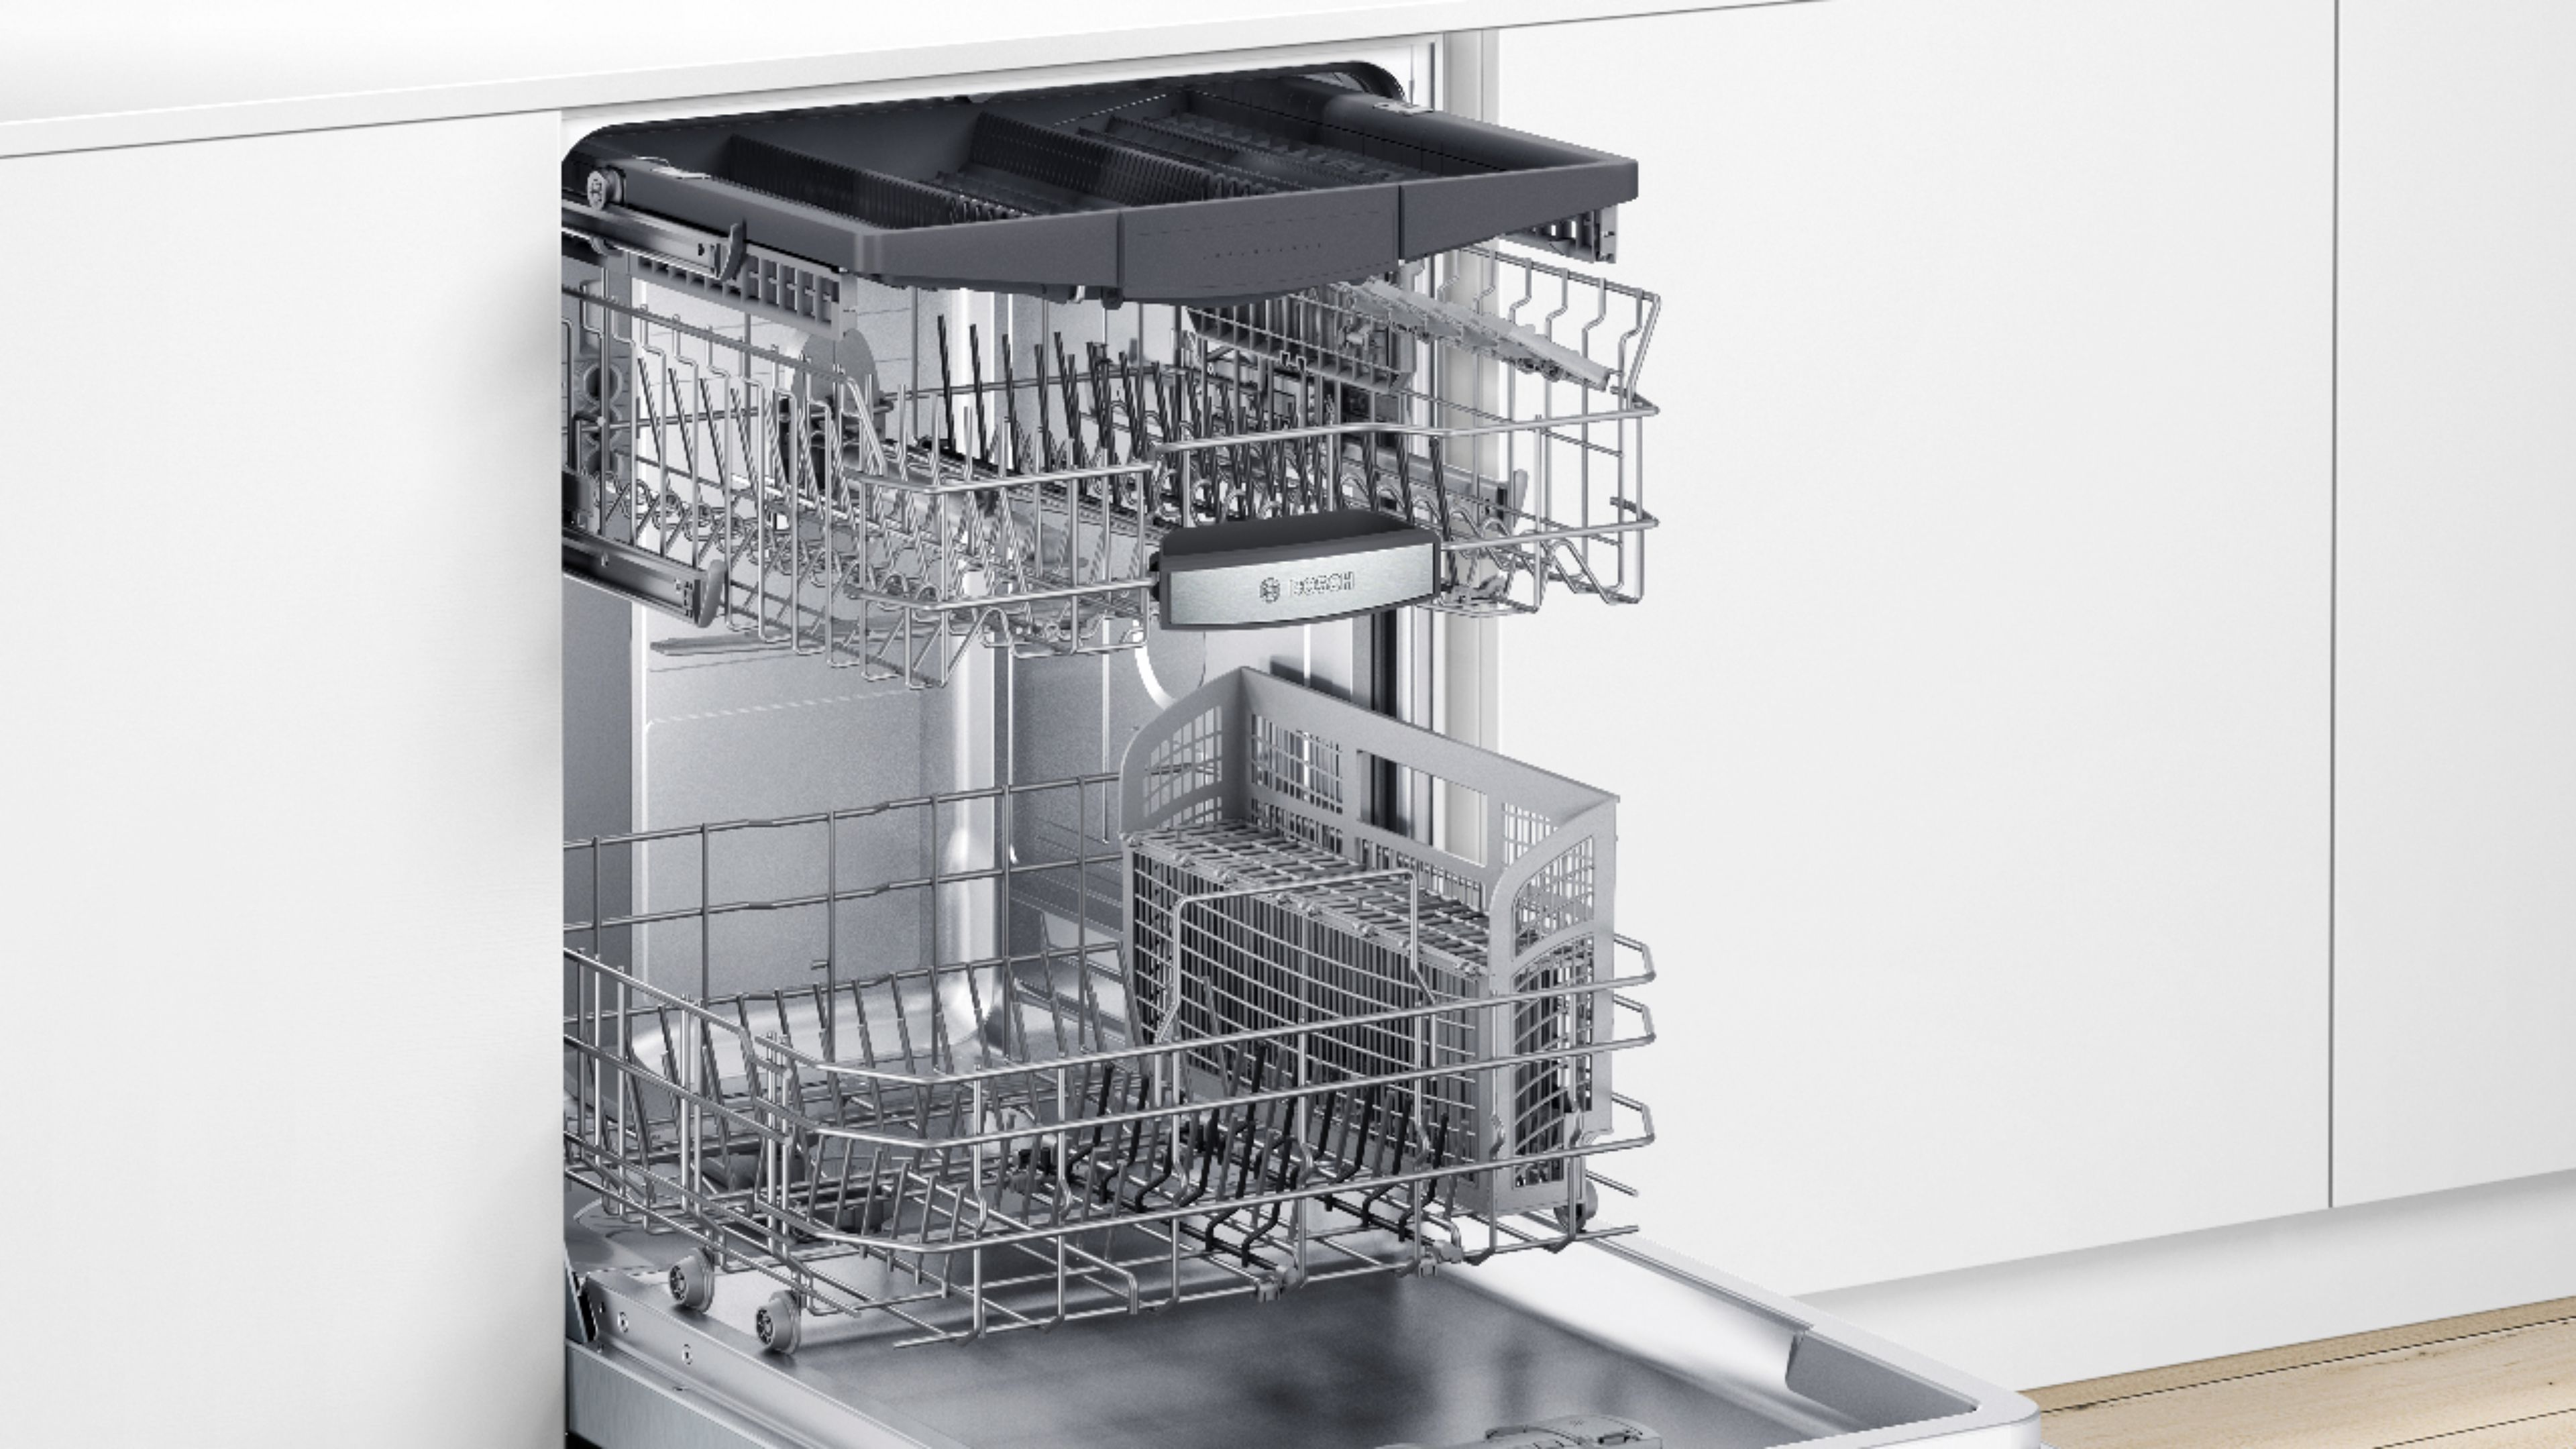 bosch 500 dishwasher sale